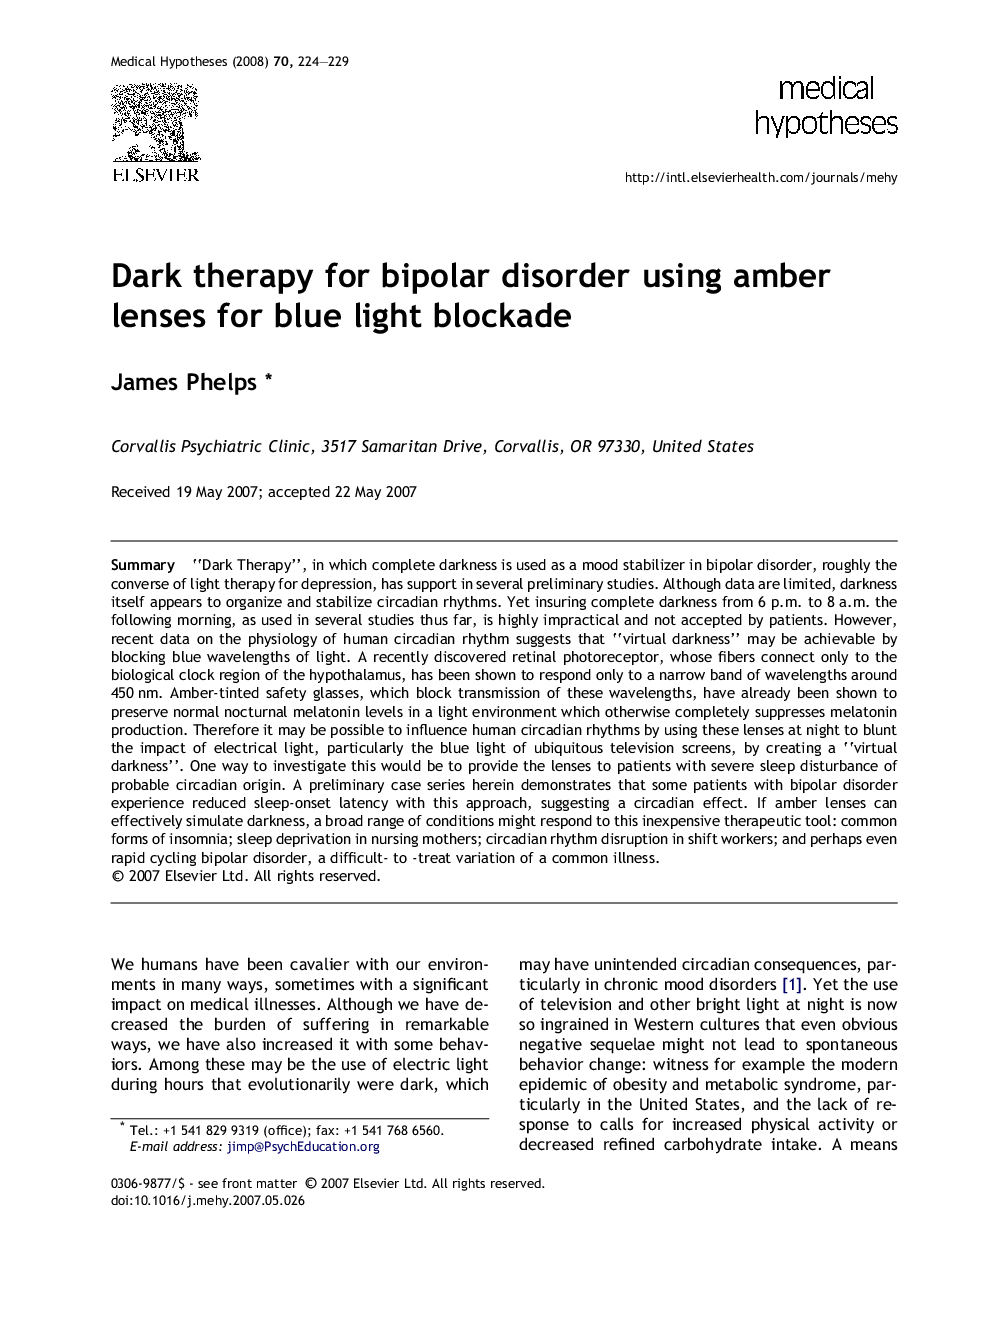 Dark therapy for bipolar disorder using amber lenses for blue light blockade